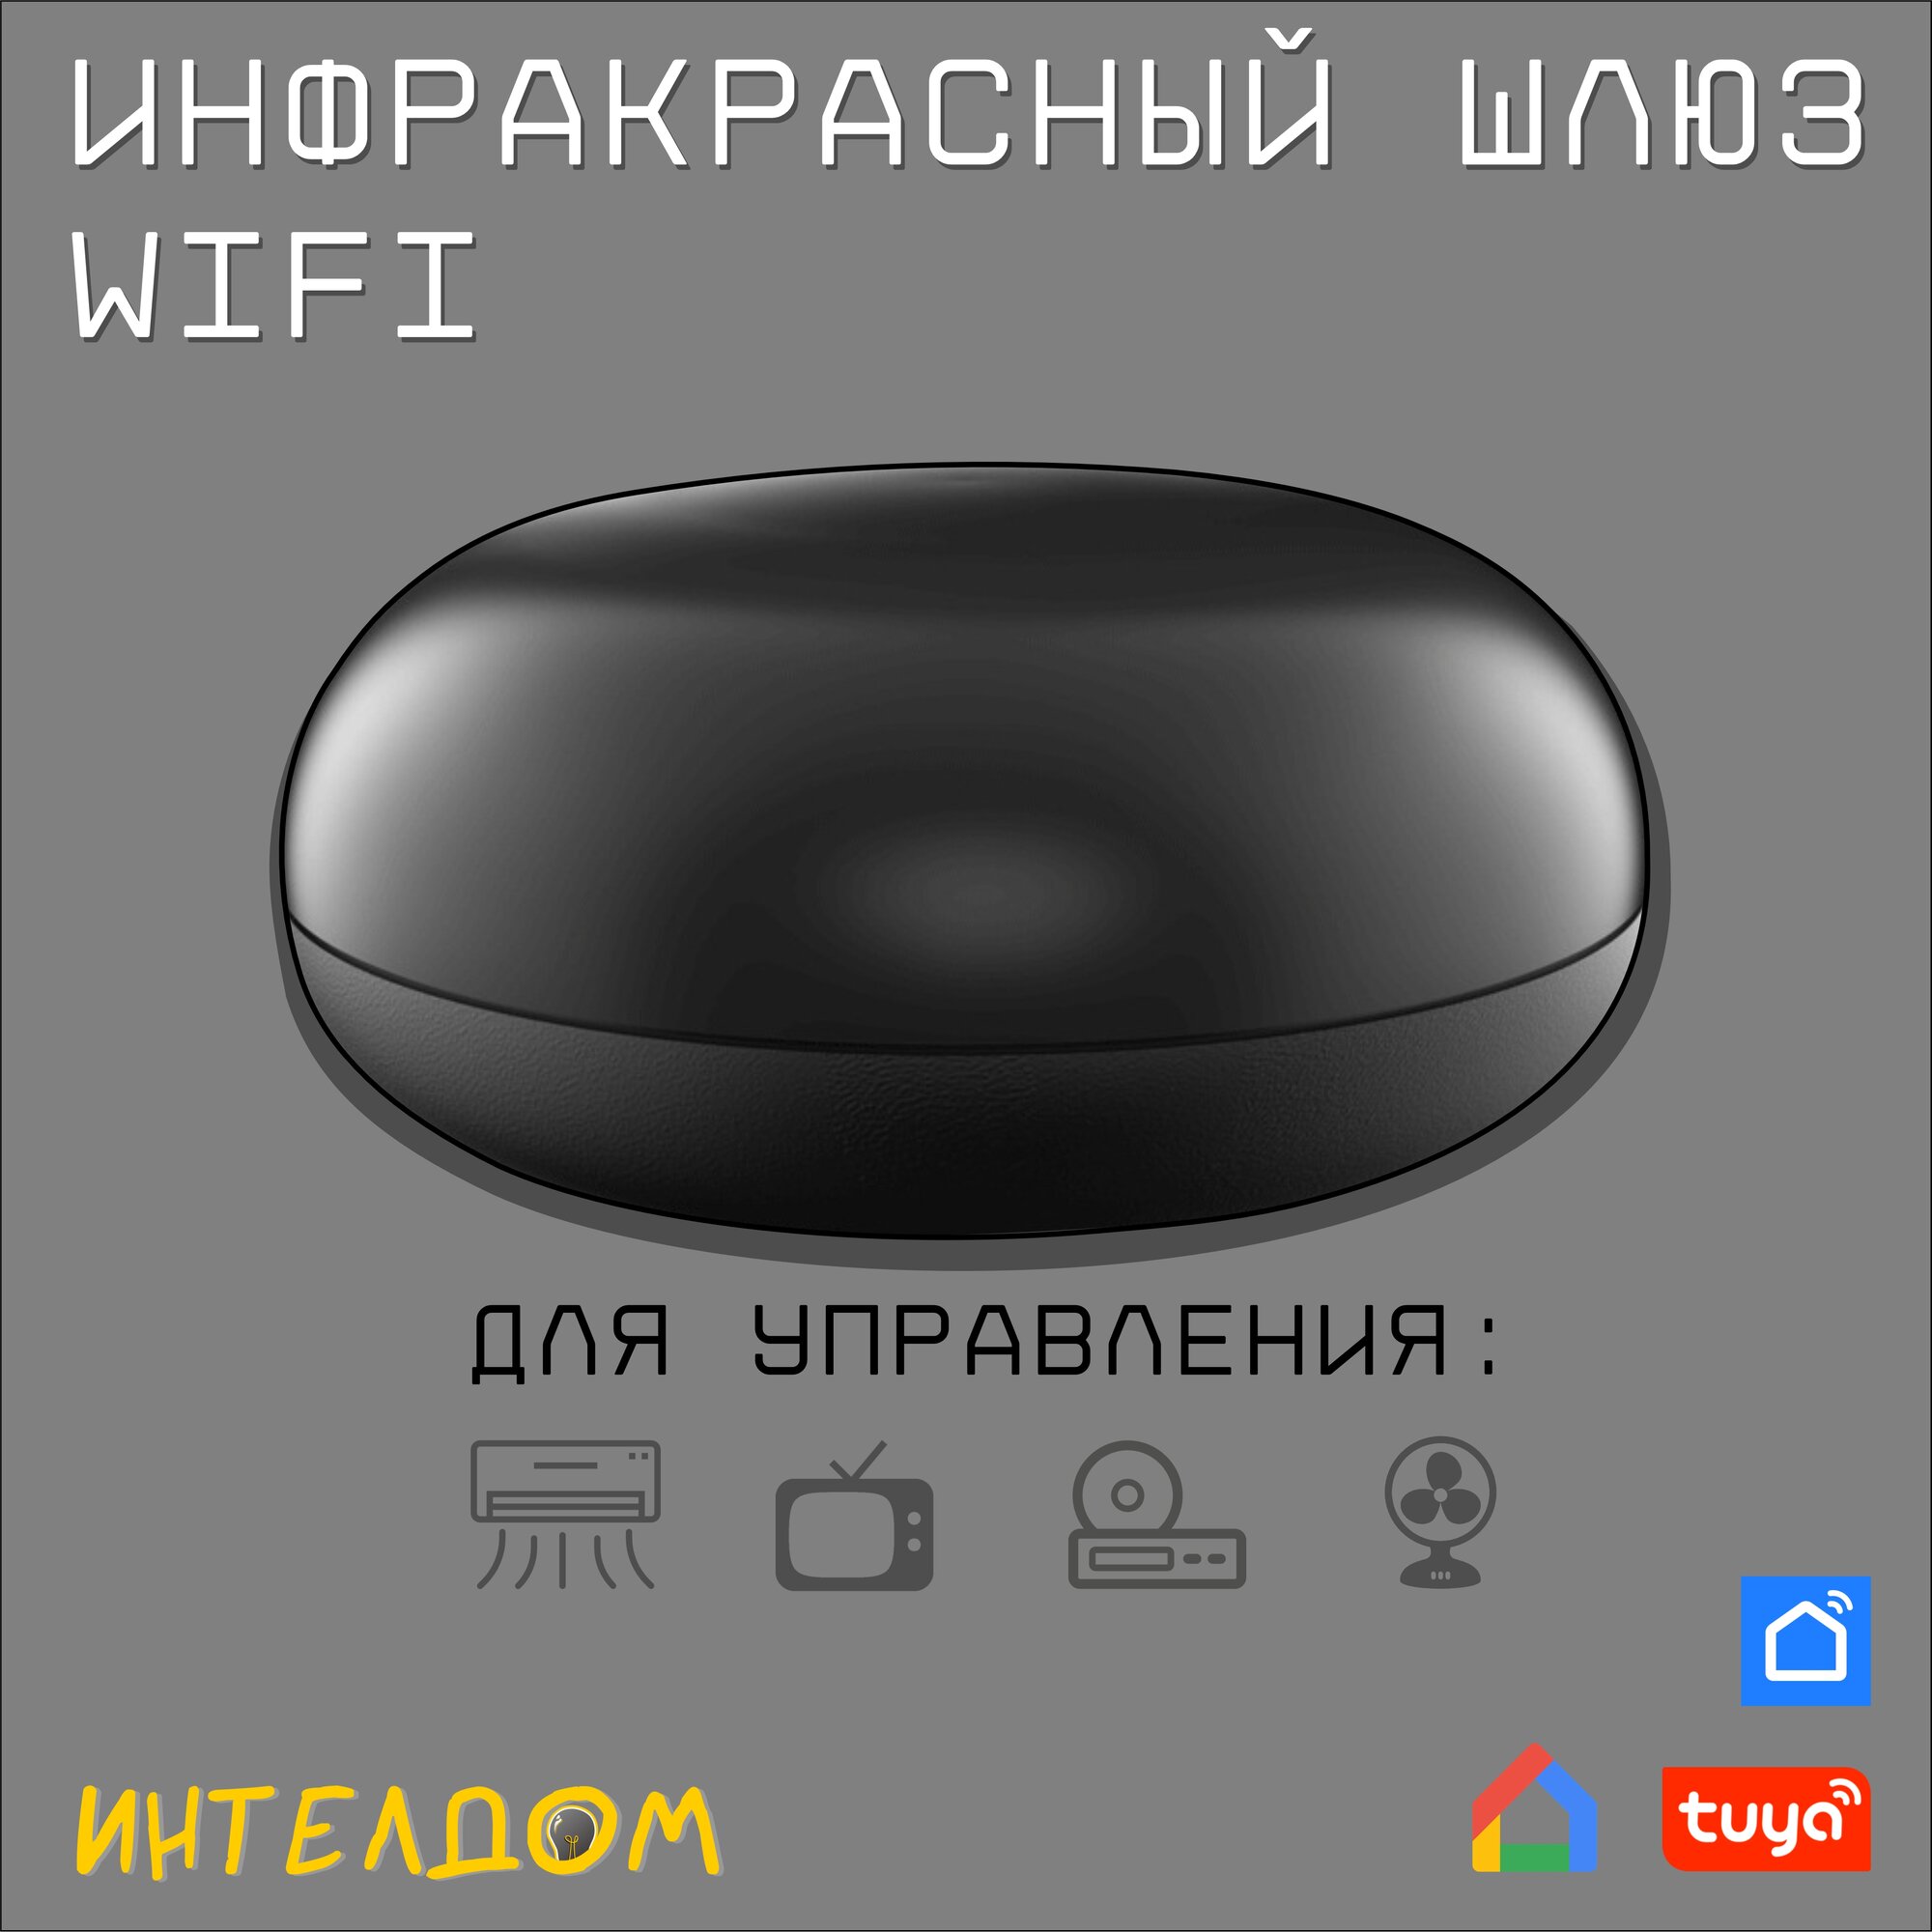 ИК-пульт управления WiFi